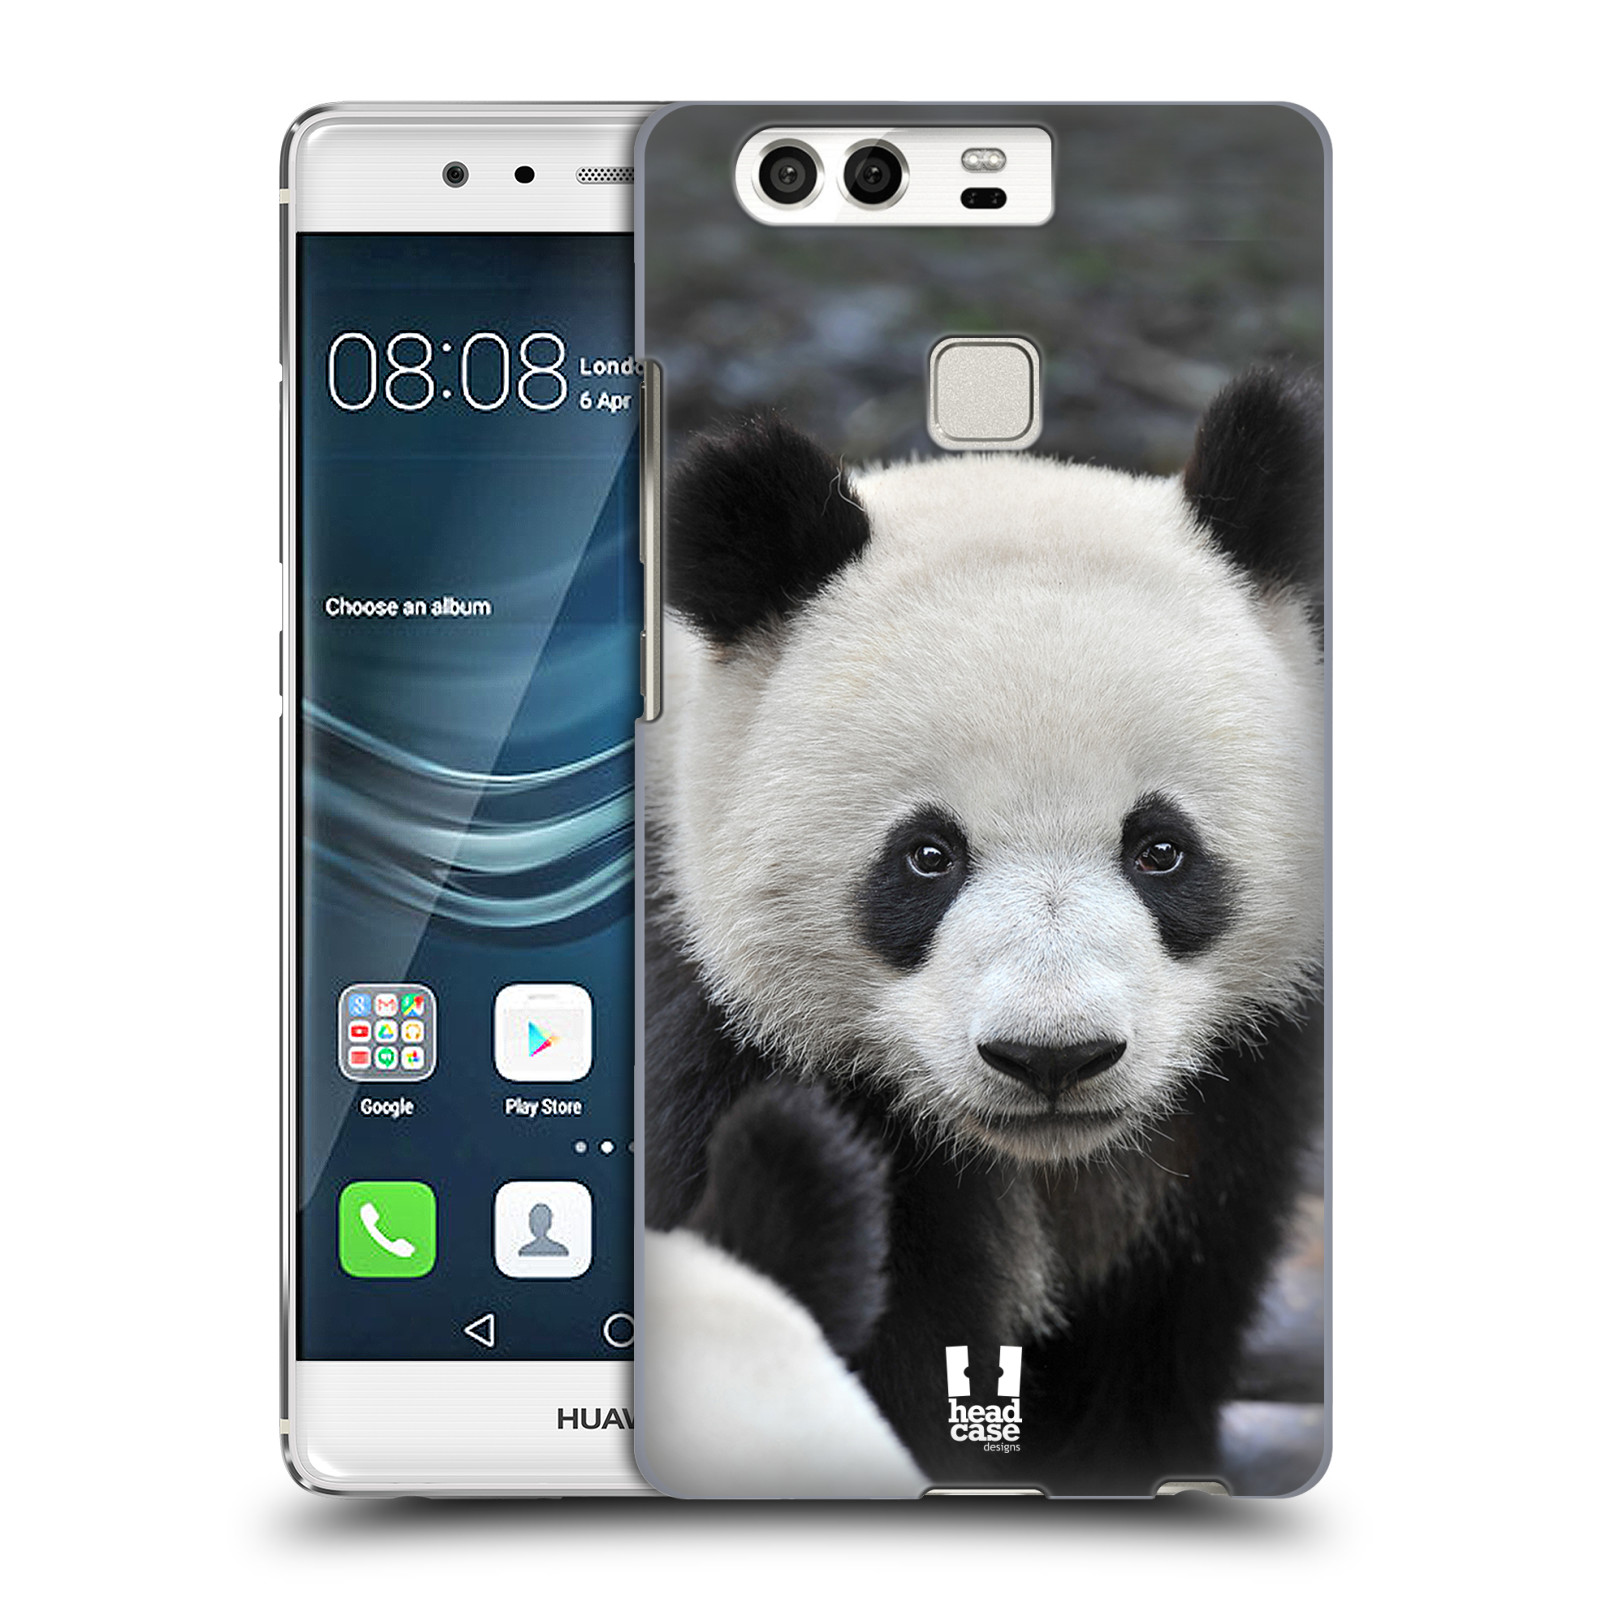 HEAD CASE plastový obal na mobil Huawei P9 / P9 DUAL SIM vzor Divočina, Divoký život a zvířata foto MEDVĚD PANDA